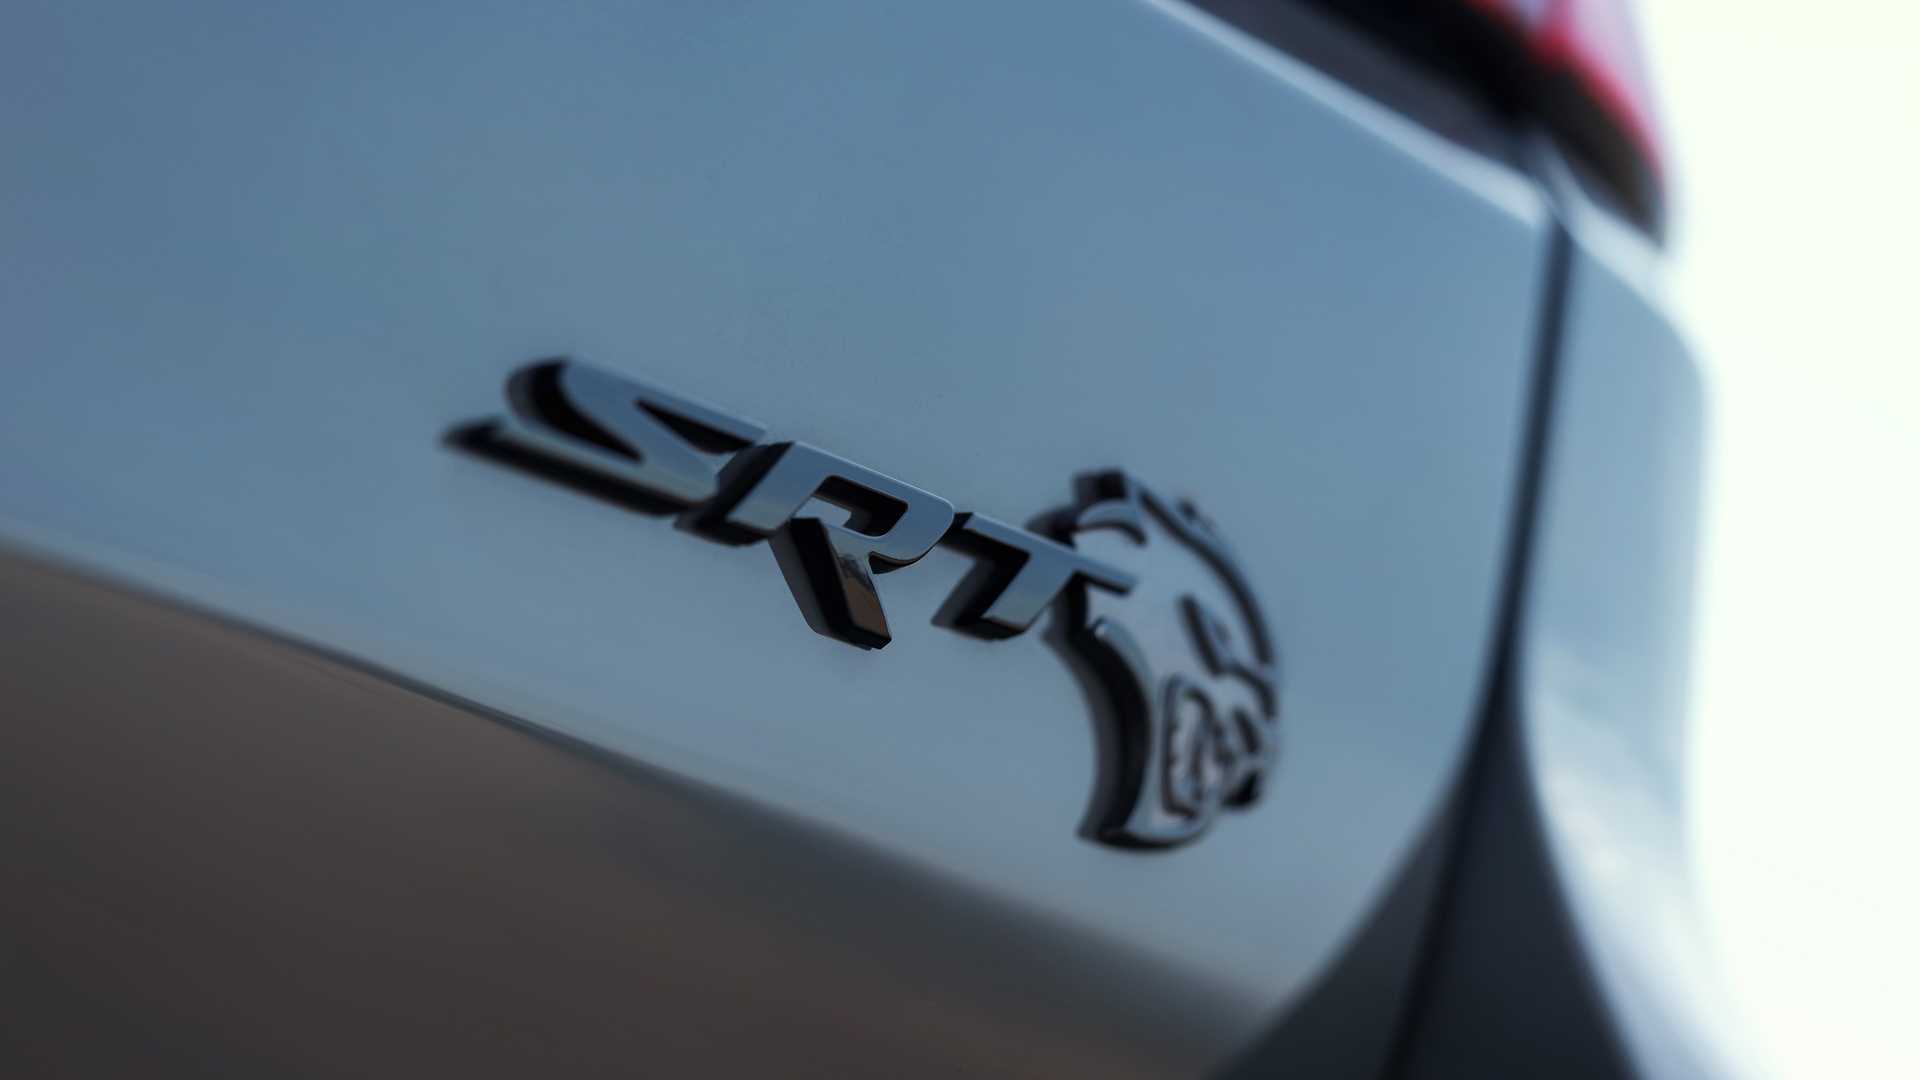 دودج تكشف عن دورانجو SRT هيلكات 2021 كأقوى SUV في العالم 63